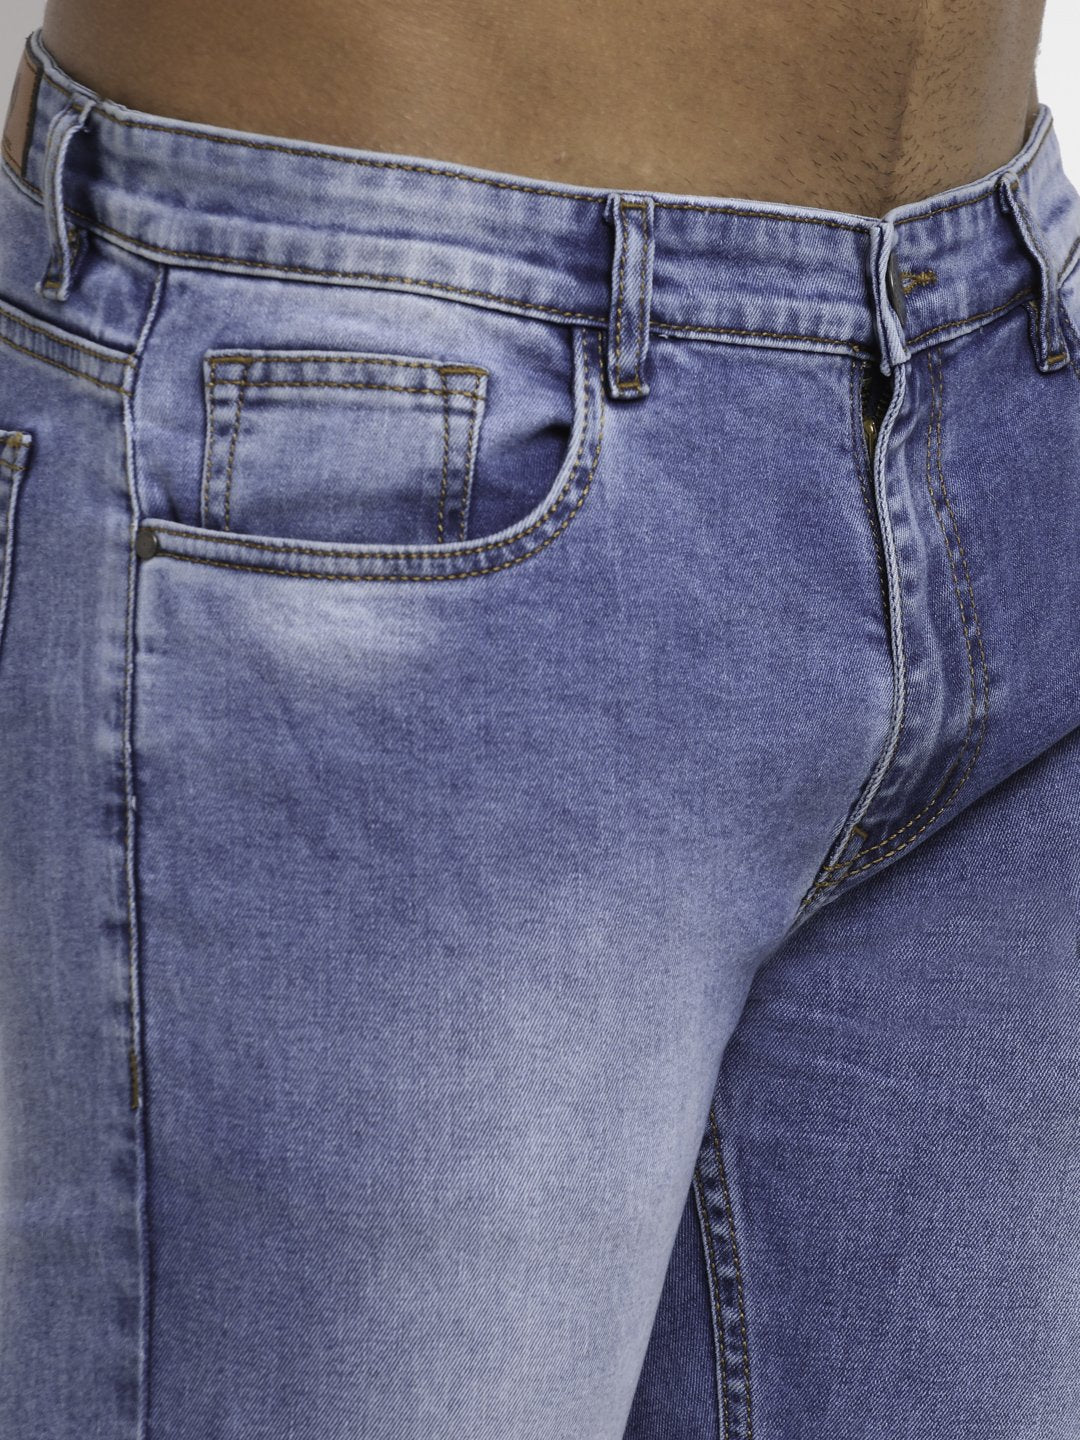 Men Blue Denim Solid Jeans